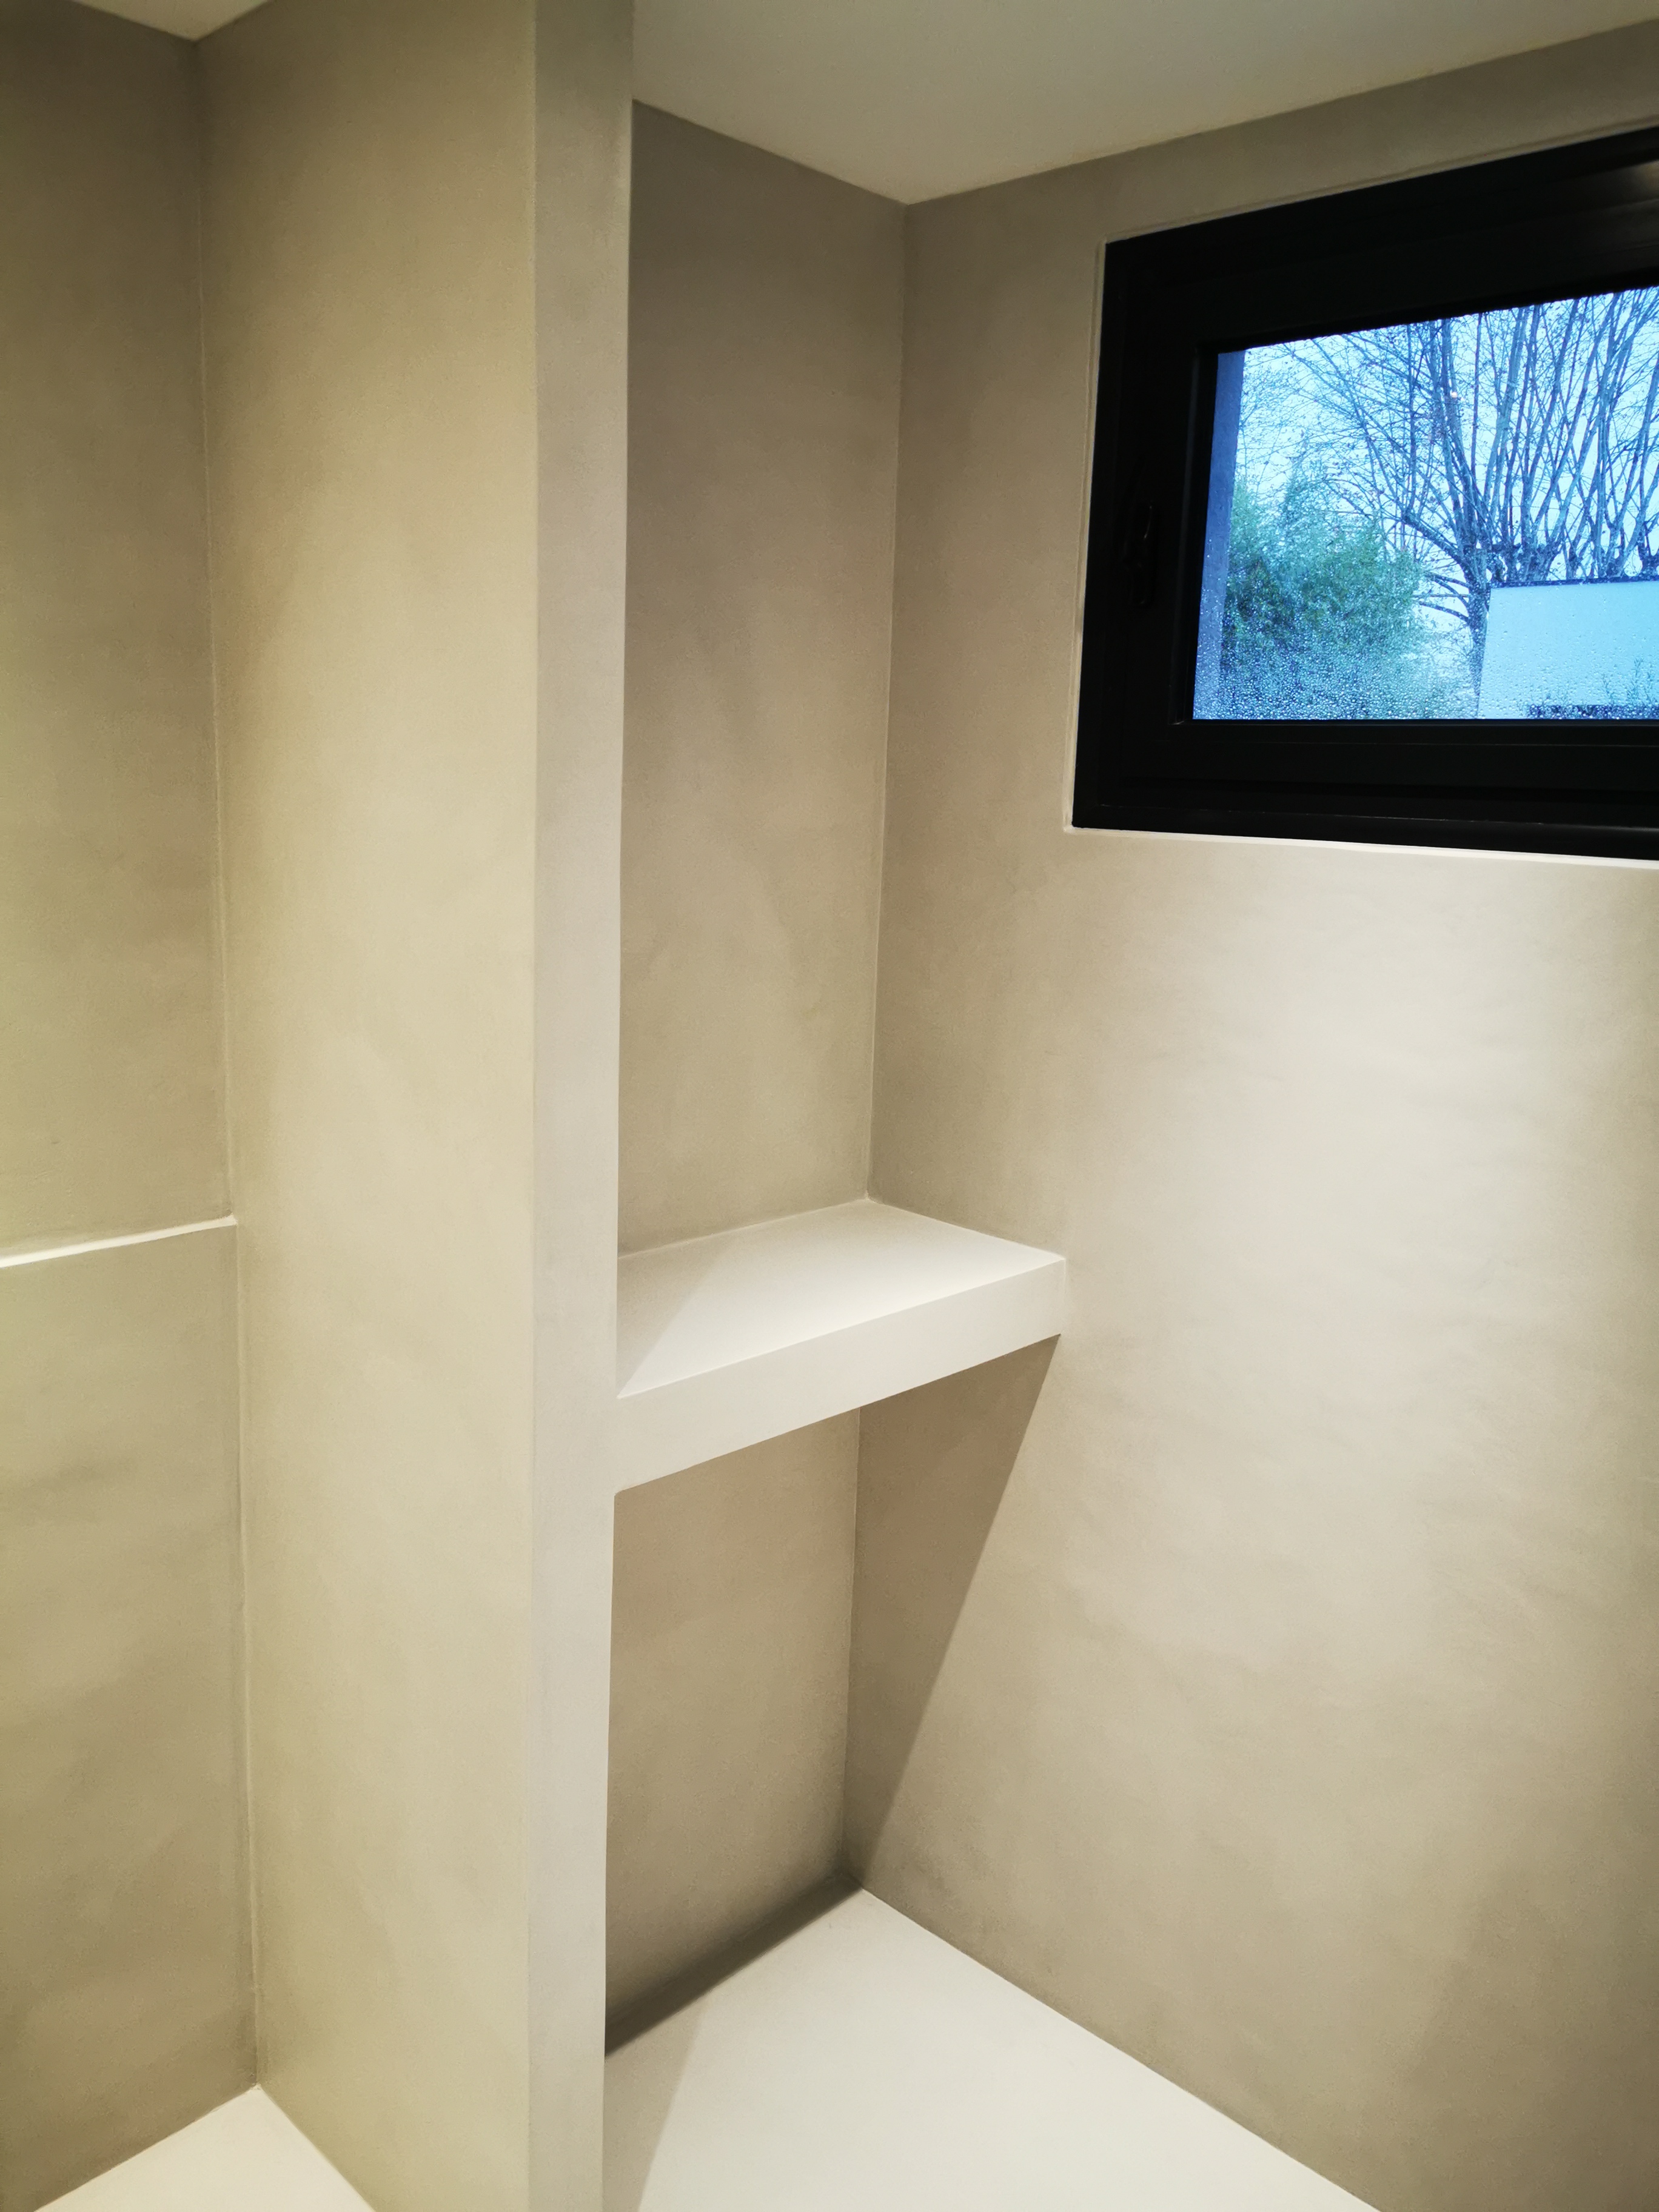 élégante rénovation d'une salle de bain en béton ciré vernis mat couleur gris cendré à Bordeaux en Aquitaine pour un particulier